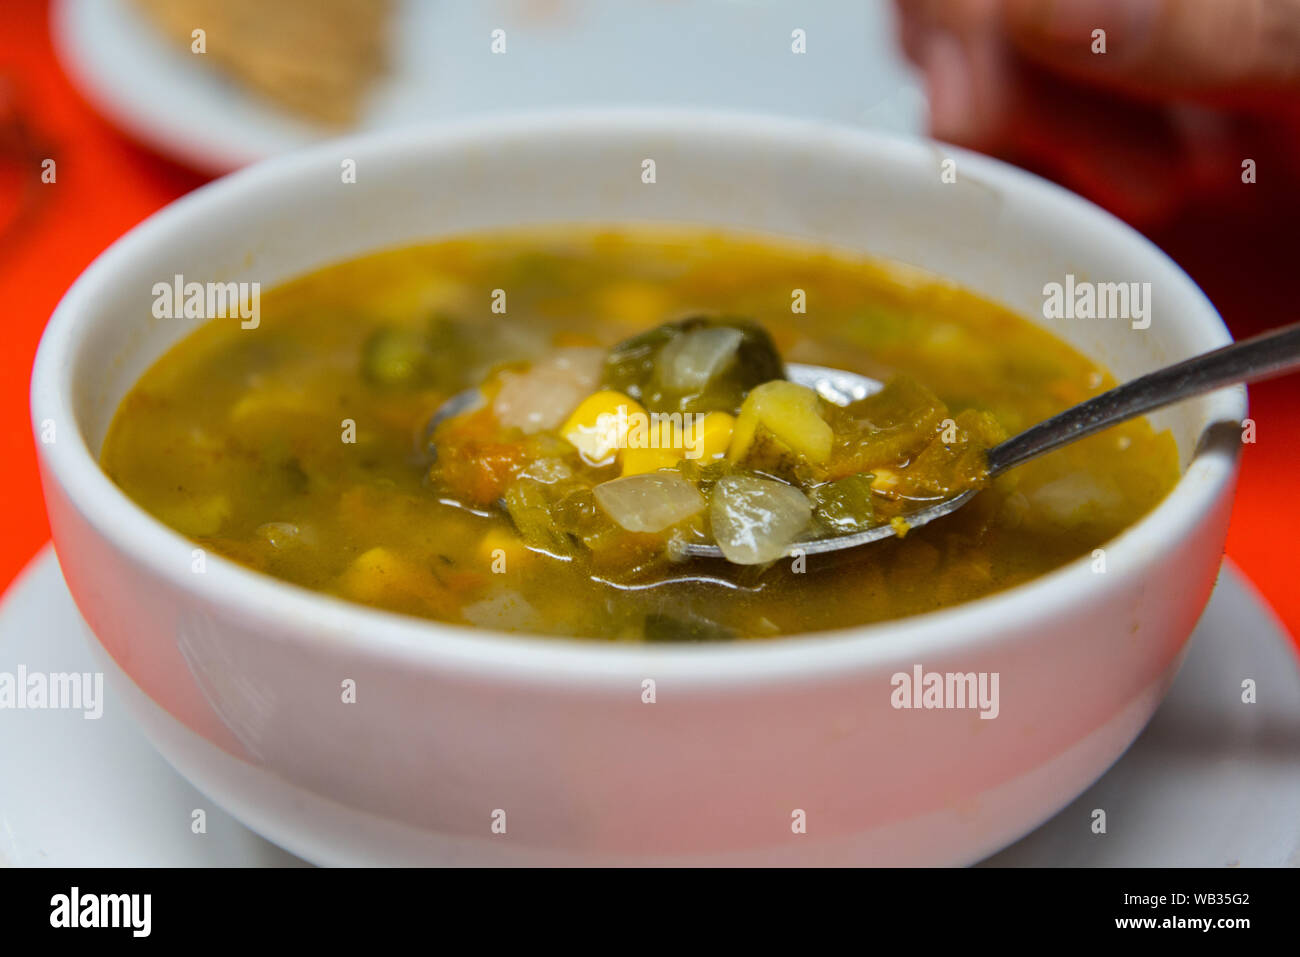 Cuisine mexicaine, soupe de légumes Banque D'Images